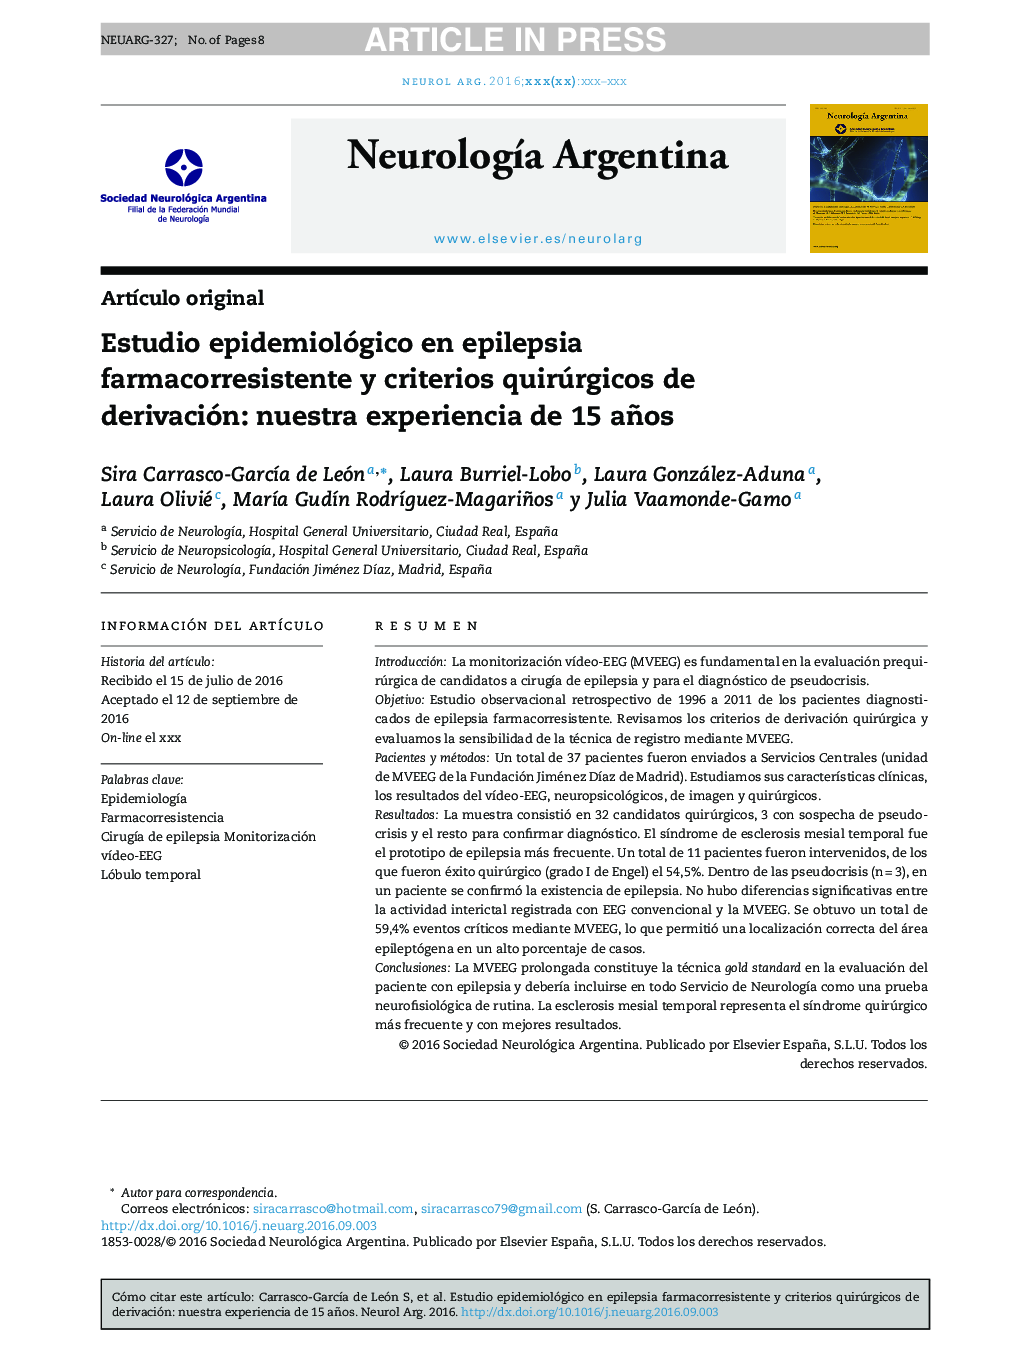 Estudio epidemiológico en epilepsia farmacorresistente y criterios quirúrgicos de derivación: nuestra experiencia de 15 años